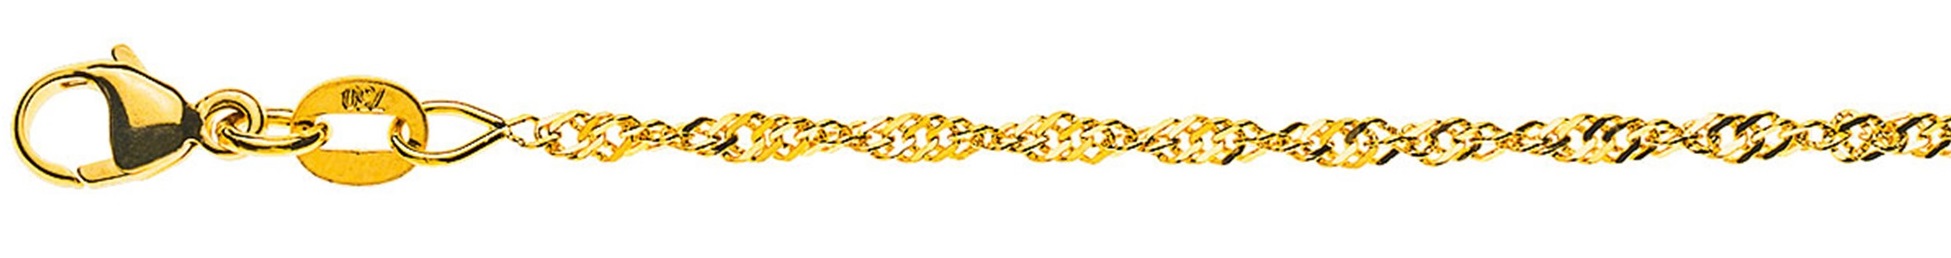 AURONOS Prestige Yellow Gold 18K Singapore Necklace 55cm 1.9mm